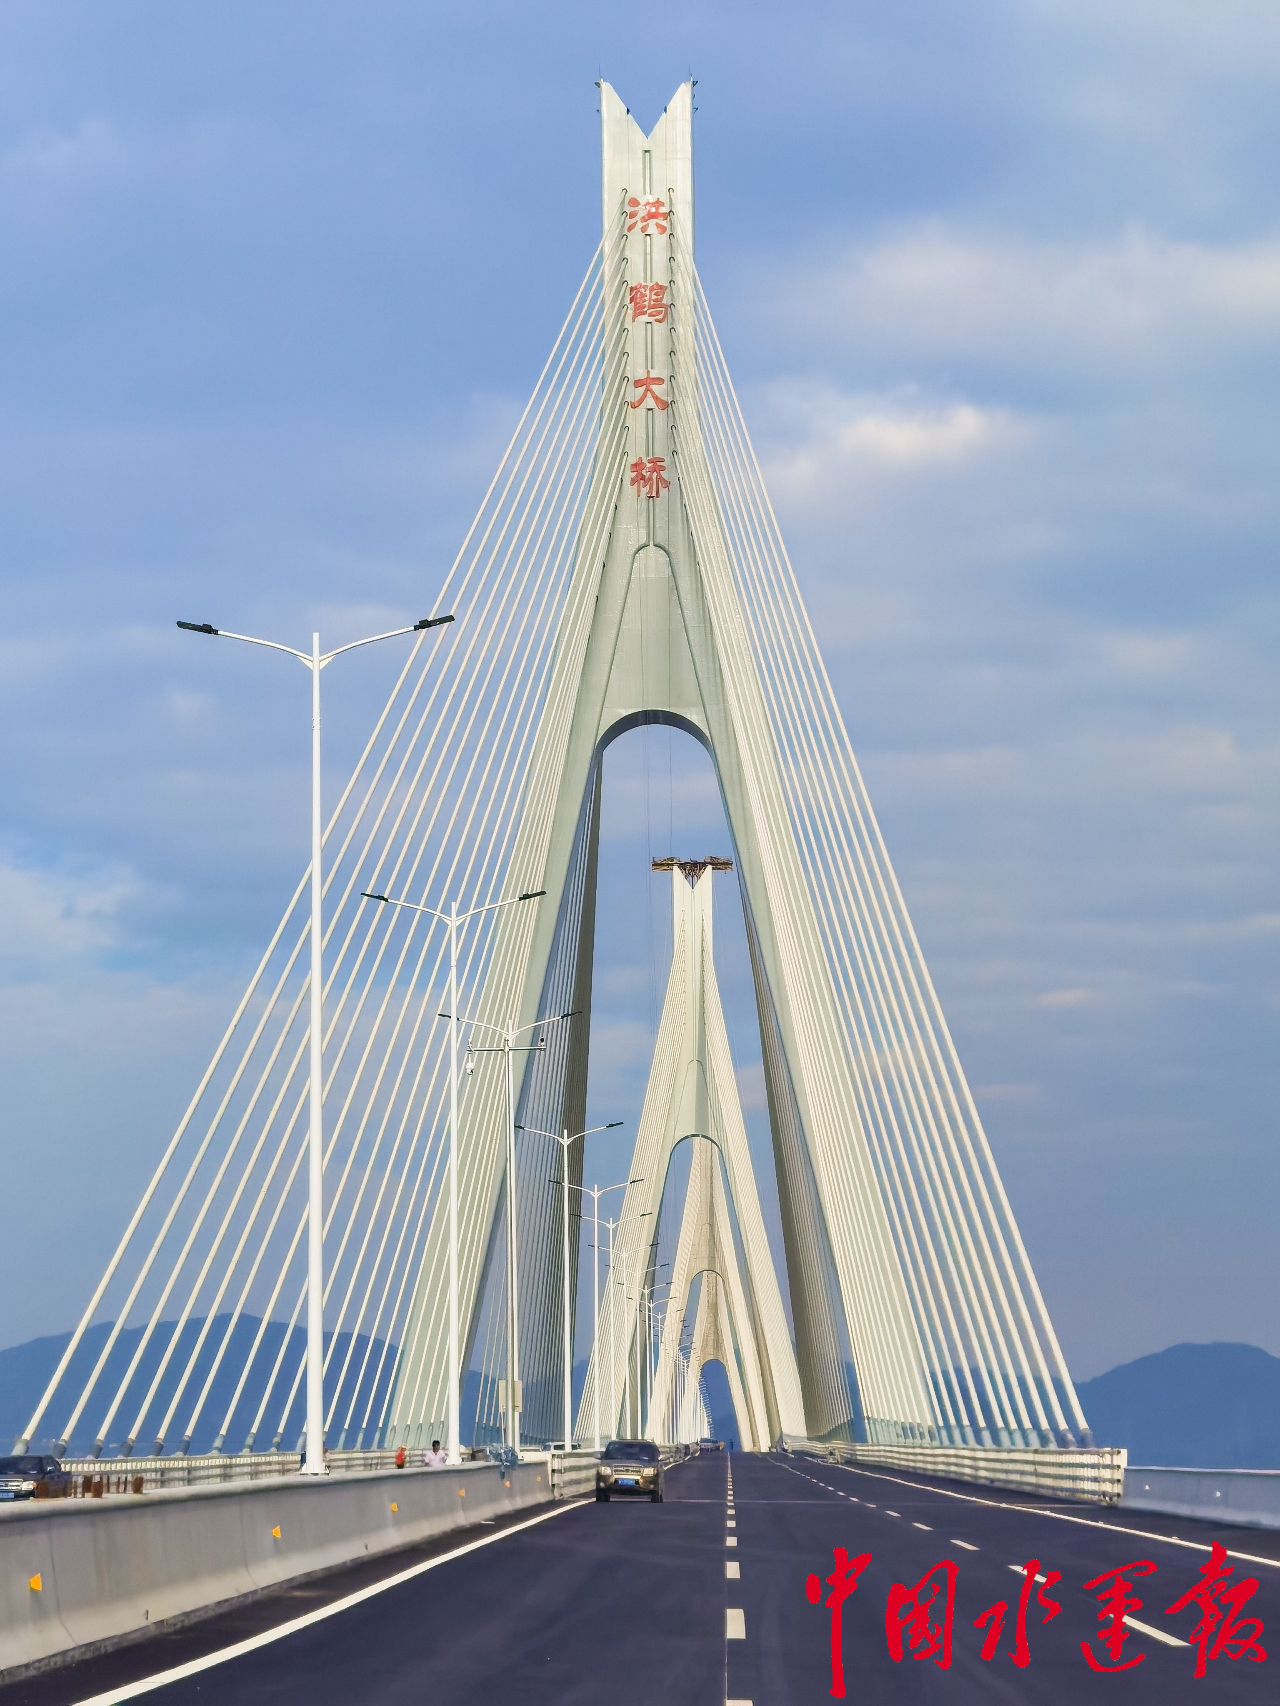 世界最大跨度串联式斜拉桥——珠海洪鹤大桥通车